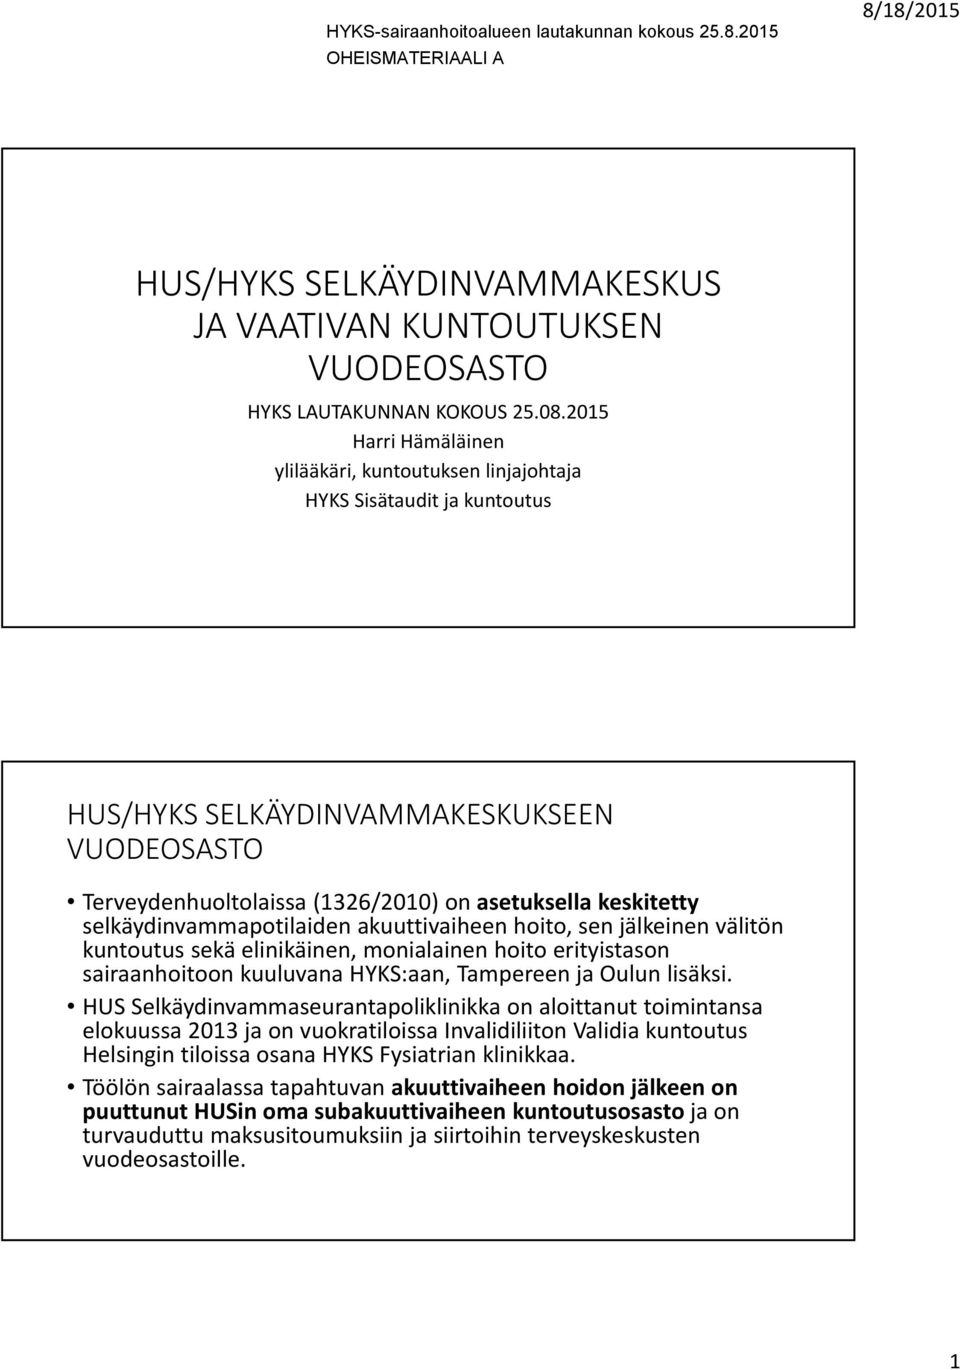 selkäydinvammapotilaiden akuuttivaiheen hoito, sen jälkeinen välitön kuntoutus sekä elinikäinen, monialainen hoito erityistason sairaanhoitoon kuuluvana HYKS:aan, Tampereen ja Oulun lisäksi.